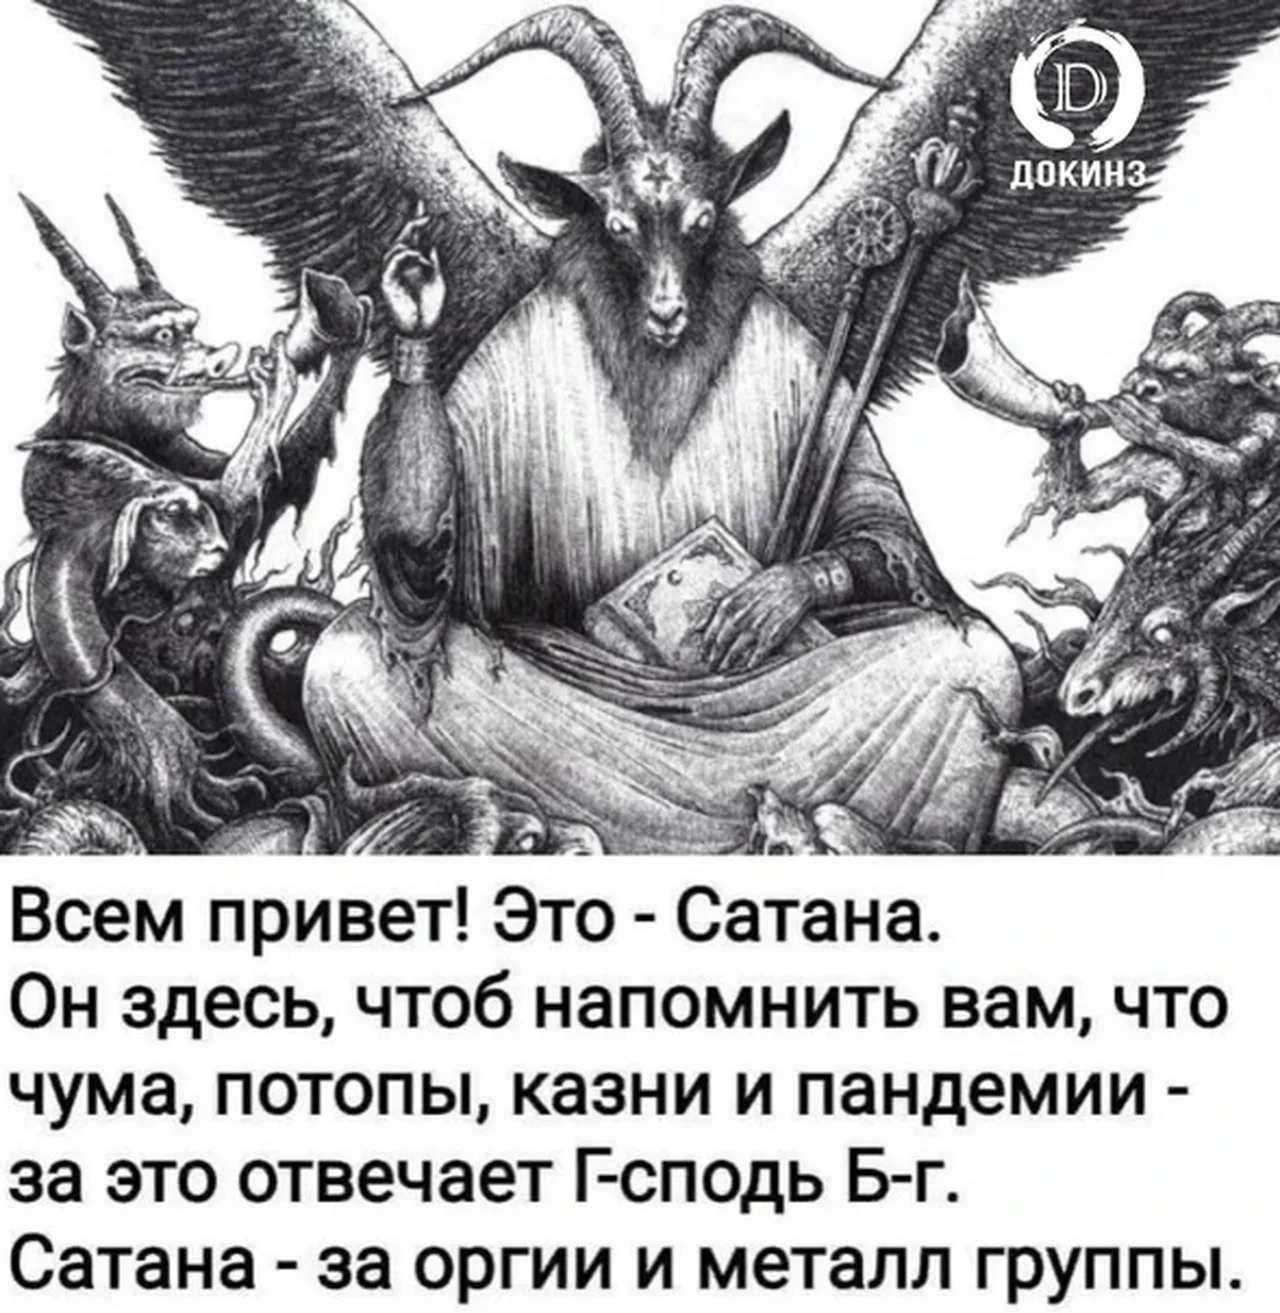 Пророчества ада. Божество дьявол. Бафомет сатанинский демон?. Бог и сатана. Библейские демоны.